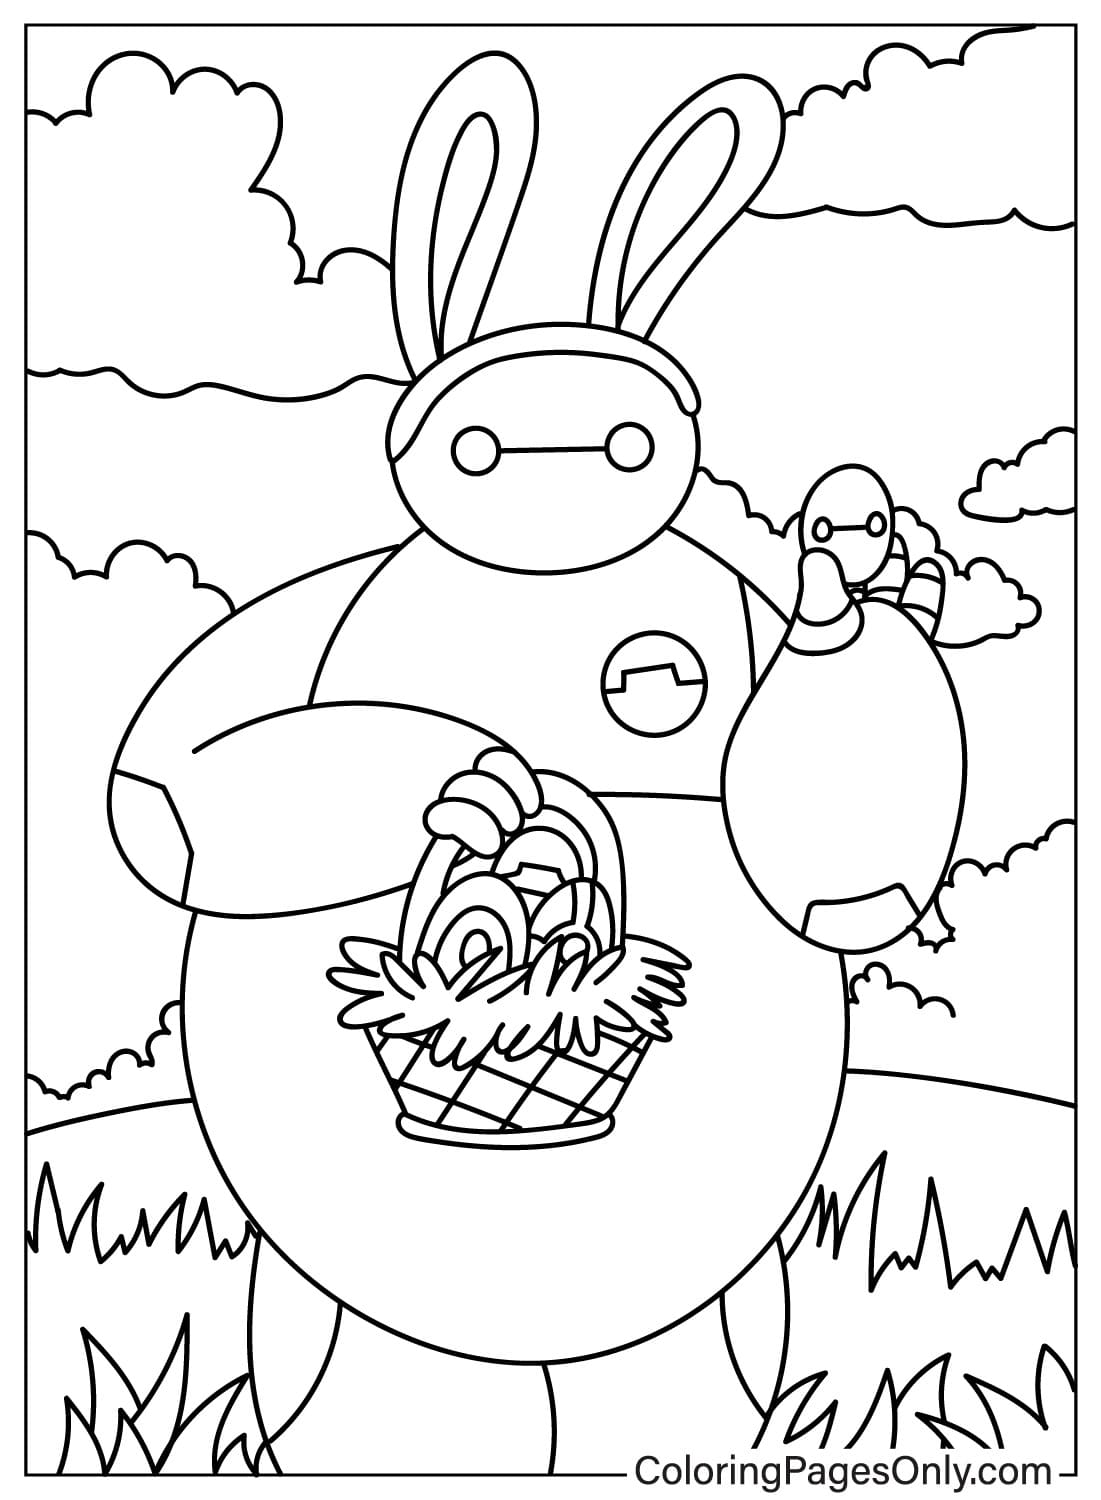 Página para colorear de dibujos animados de Pascua gratis de dibujos animados de Pascua